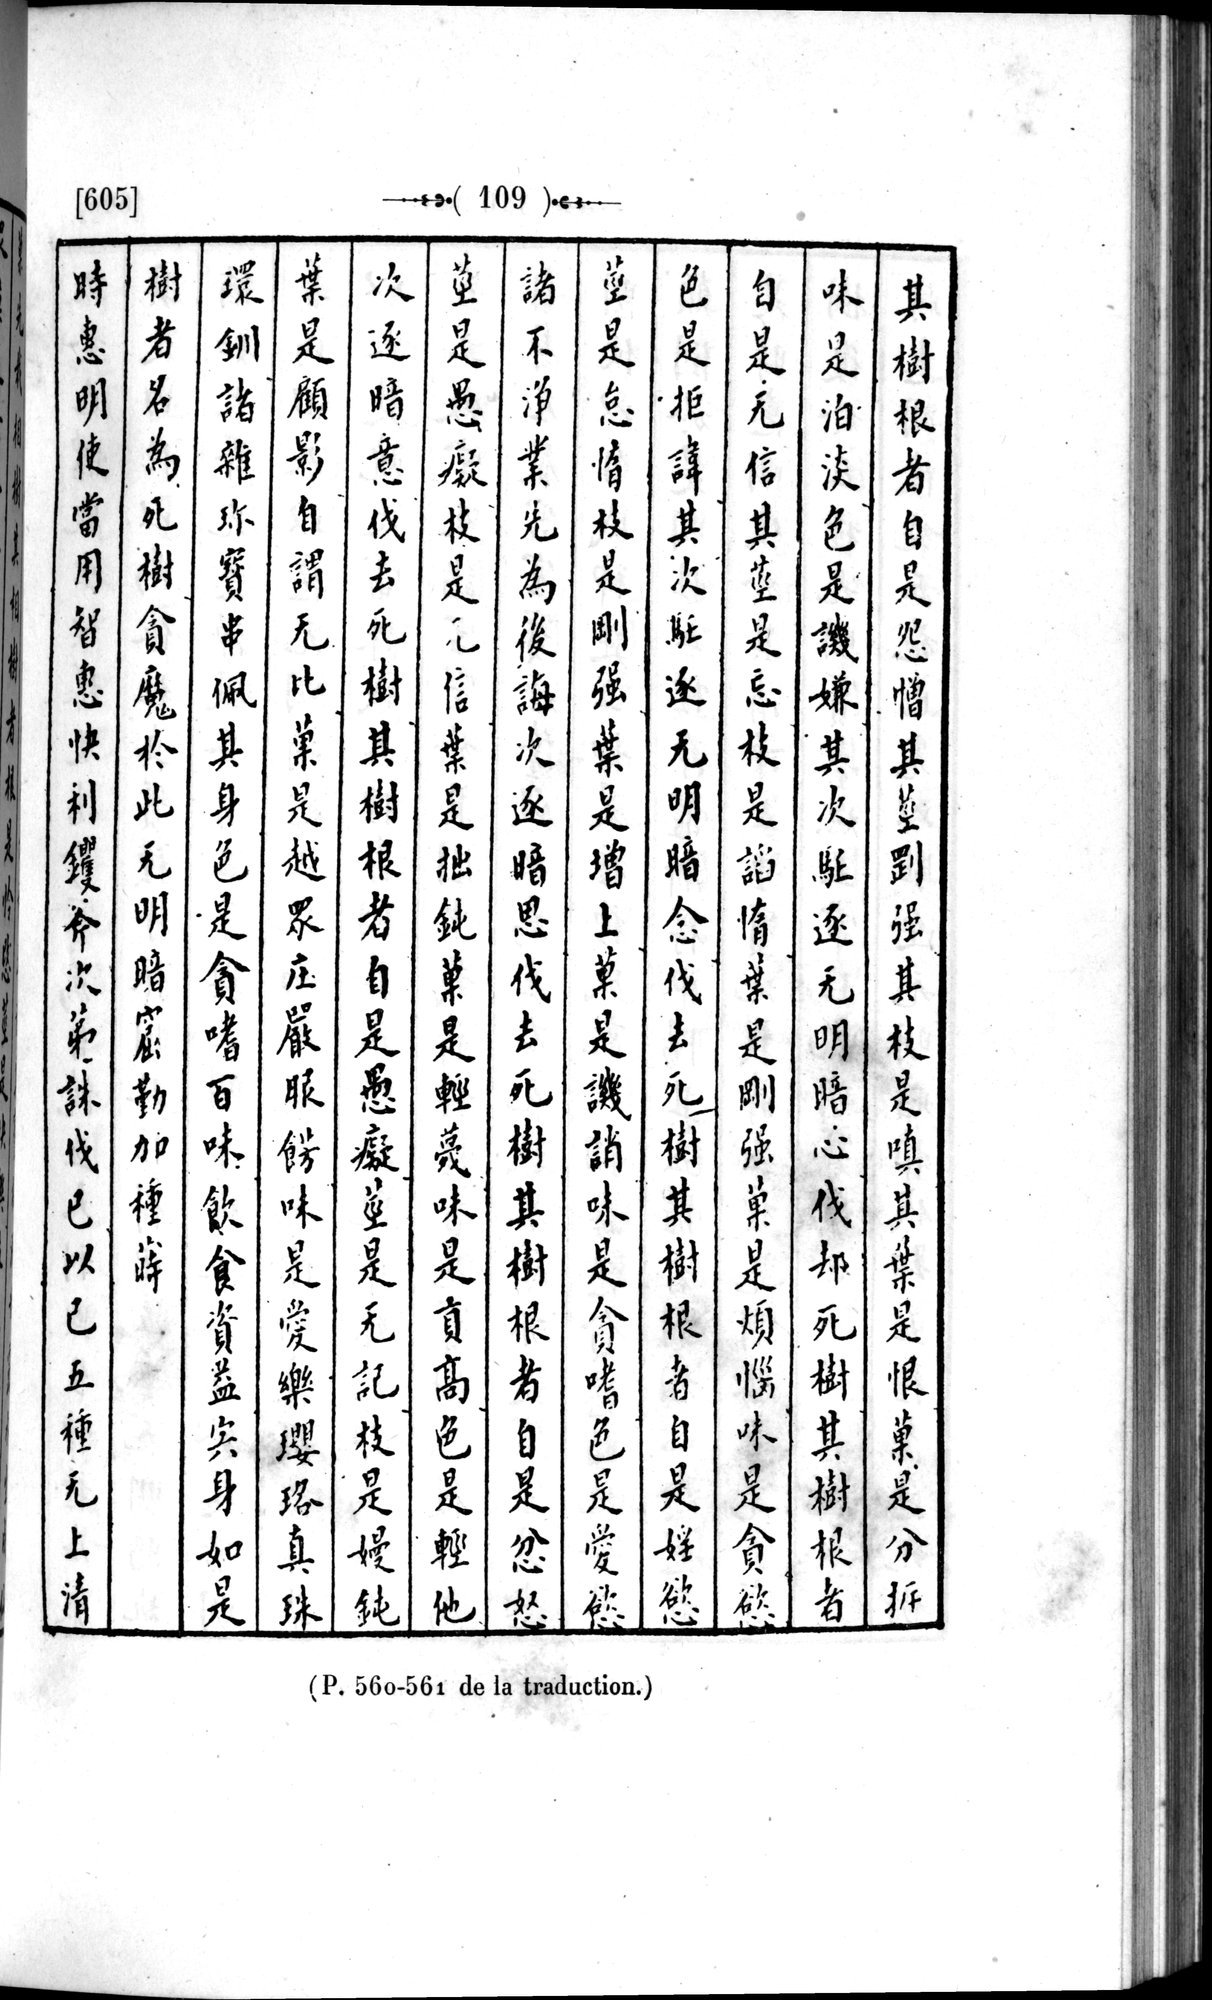 Un traité manichéen retrouvé en Chine : vol.1 / Page 119 (Grayscale High Resolution Image)